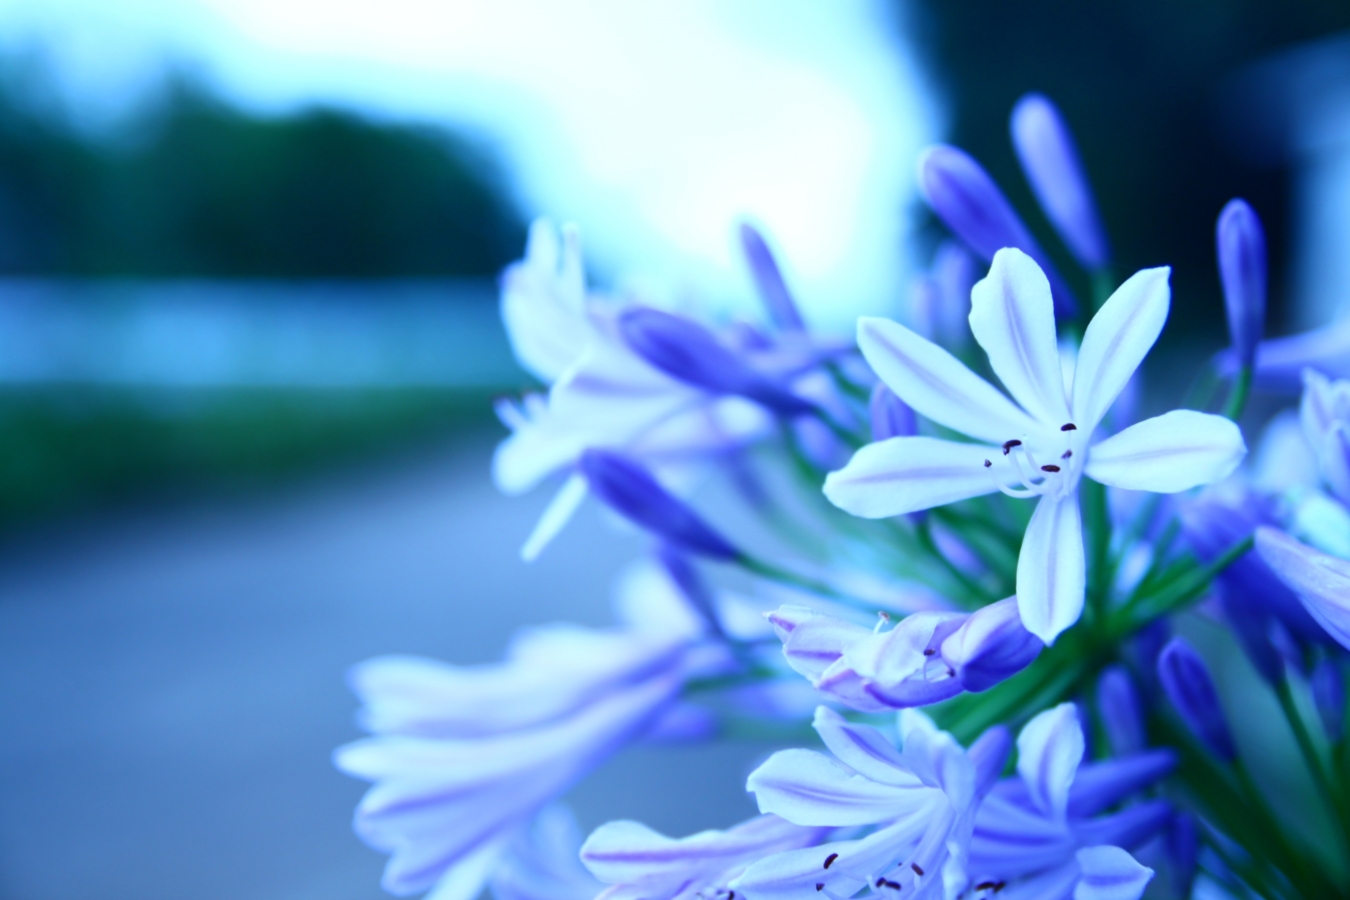 アガパンサスとは 花の特徴 花言葉 育て方 手入れ方法を紹介 Hanasaku